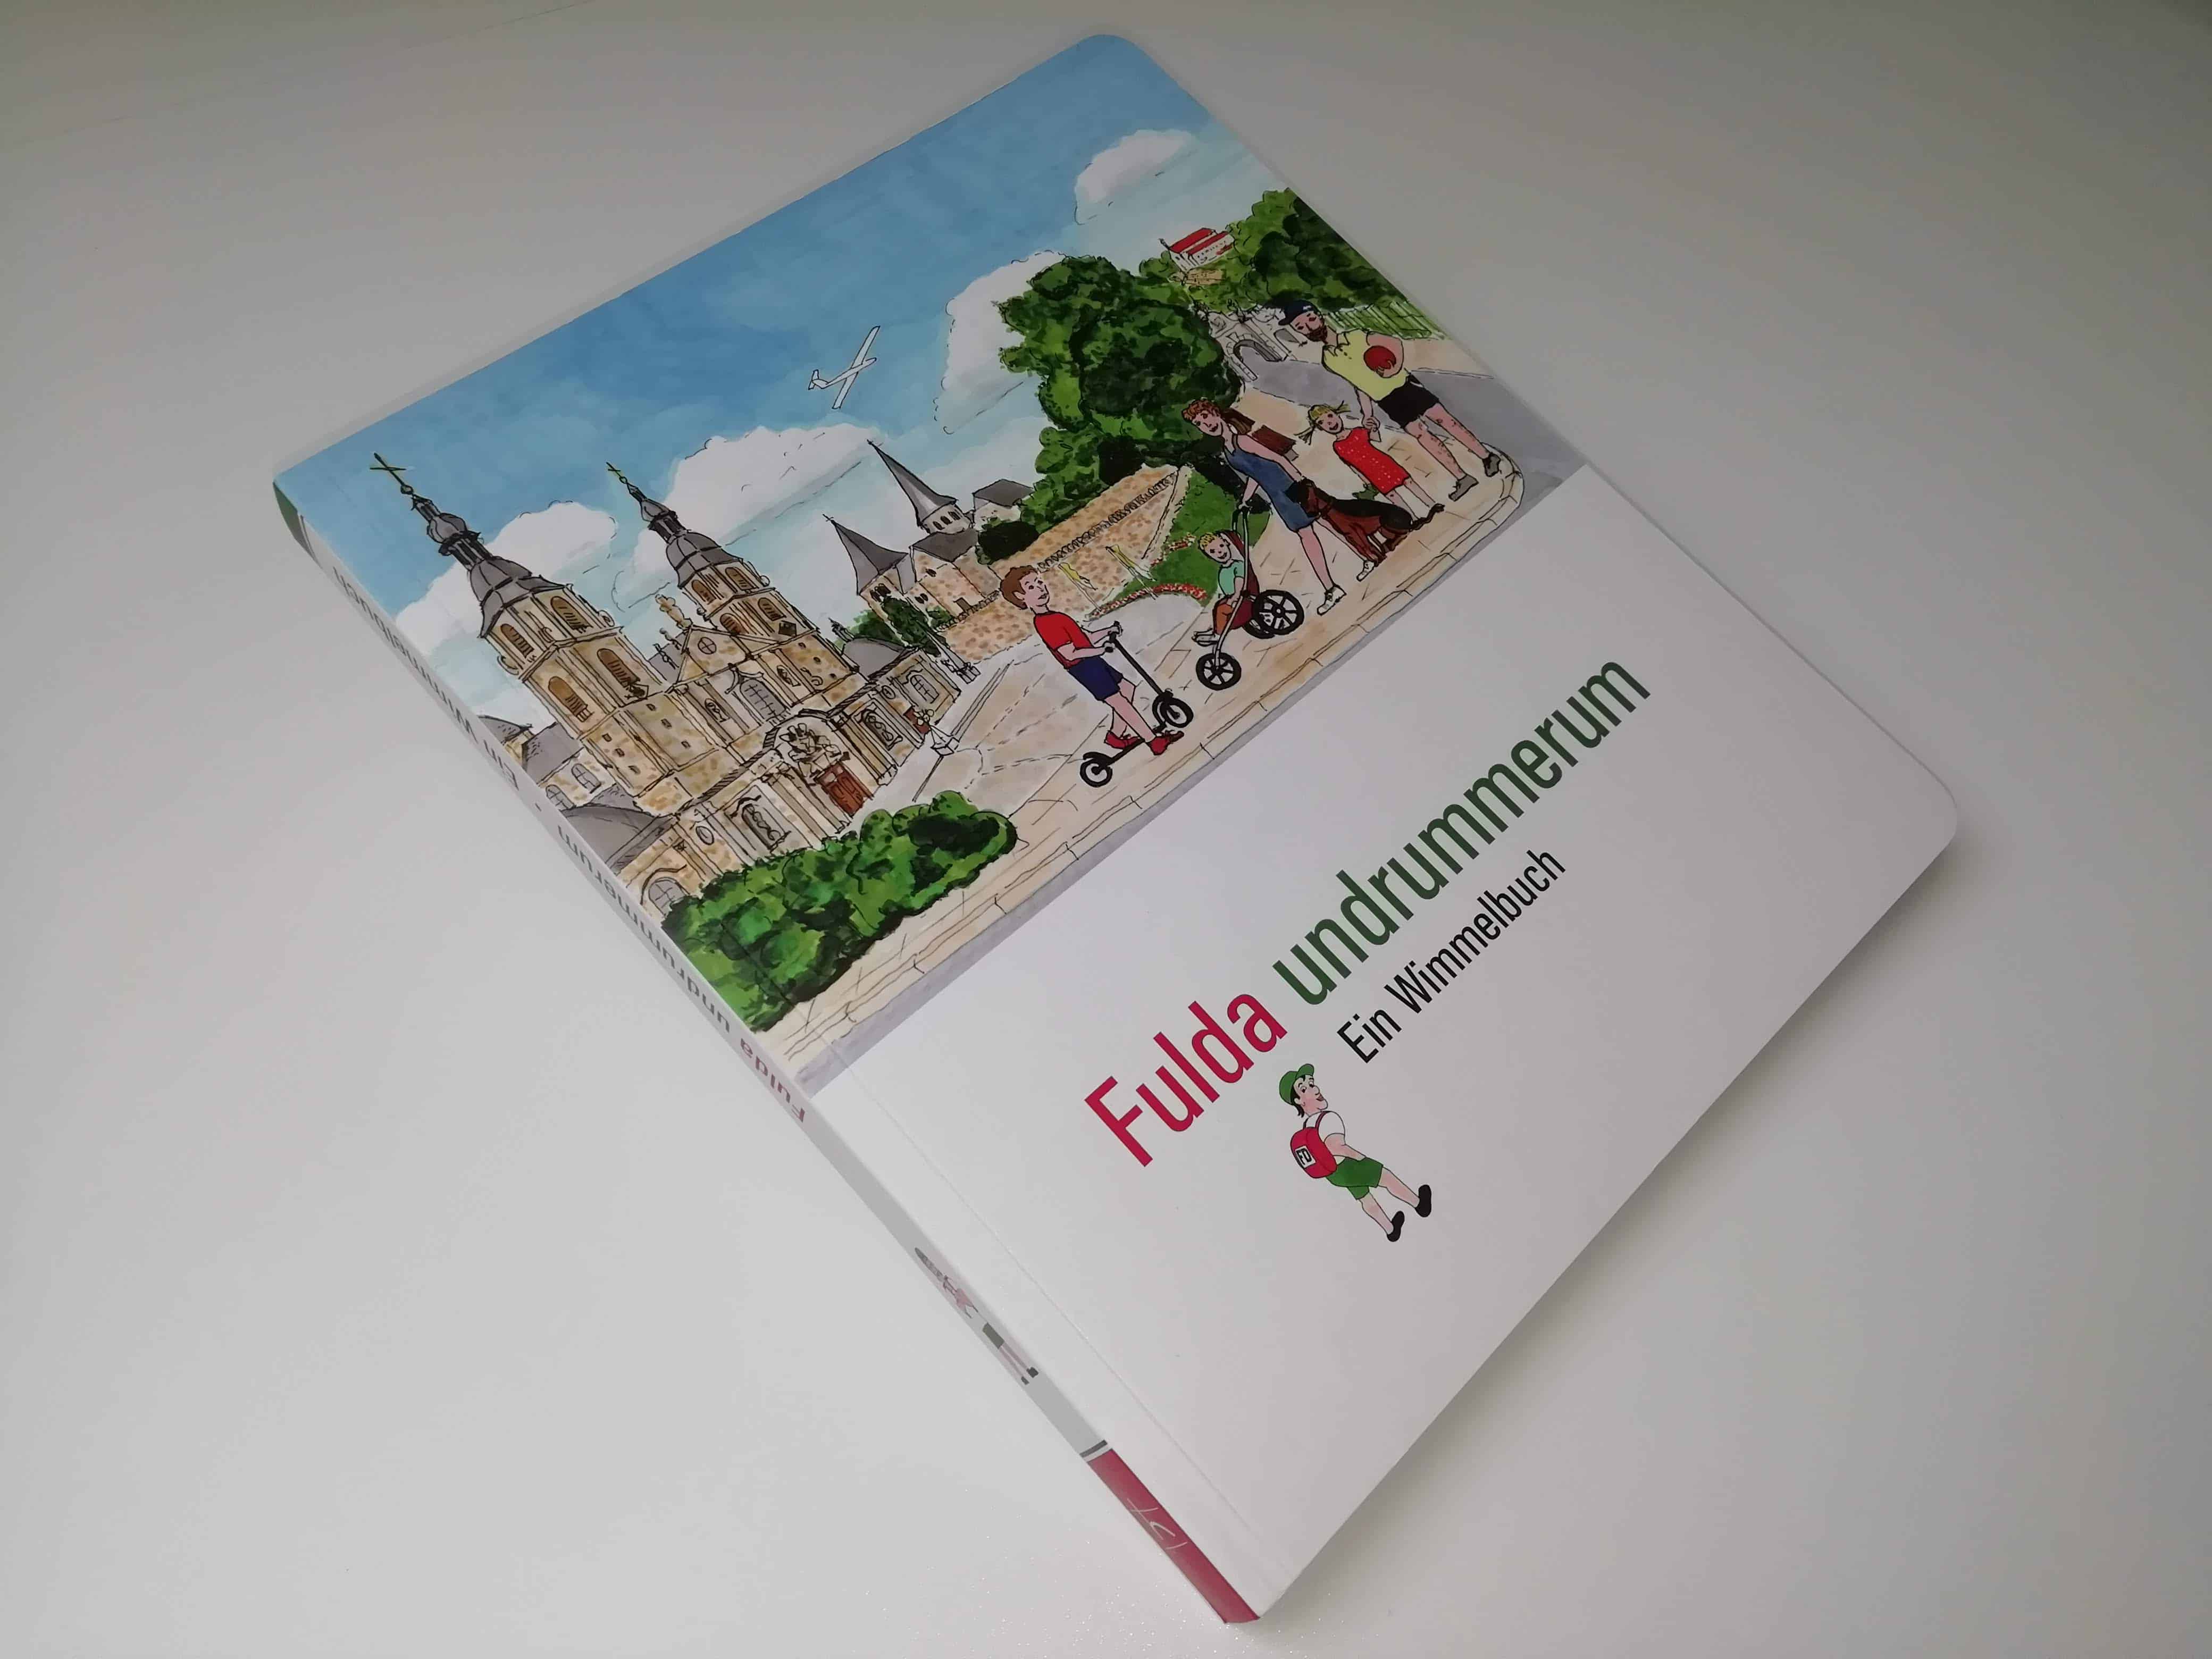 Kinderbuch “Fulda undrummerum” ein Wimmelbuch nicht nur für Kinder